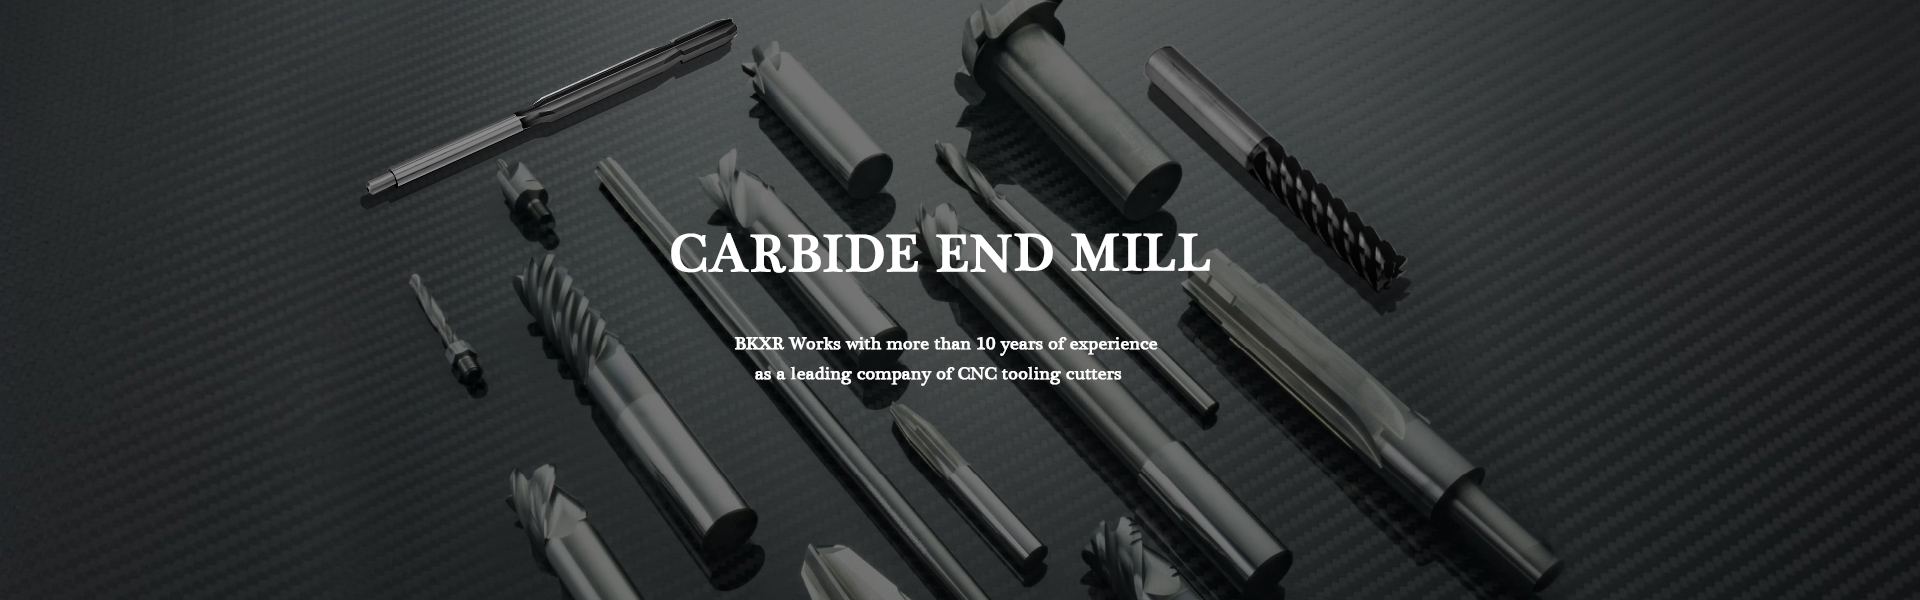 Carbide End Mill, Carbide Insert, CNC Cutter,Guangdong Berkshire Technology Ltd.